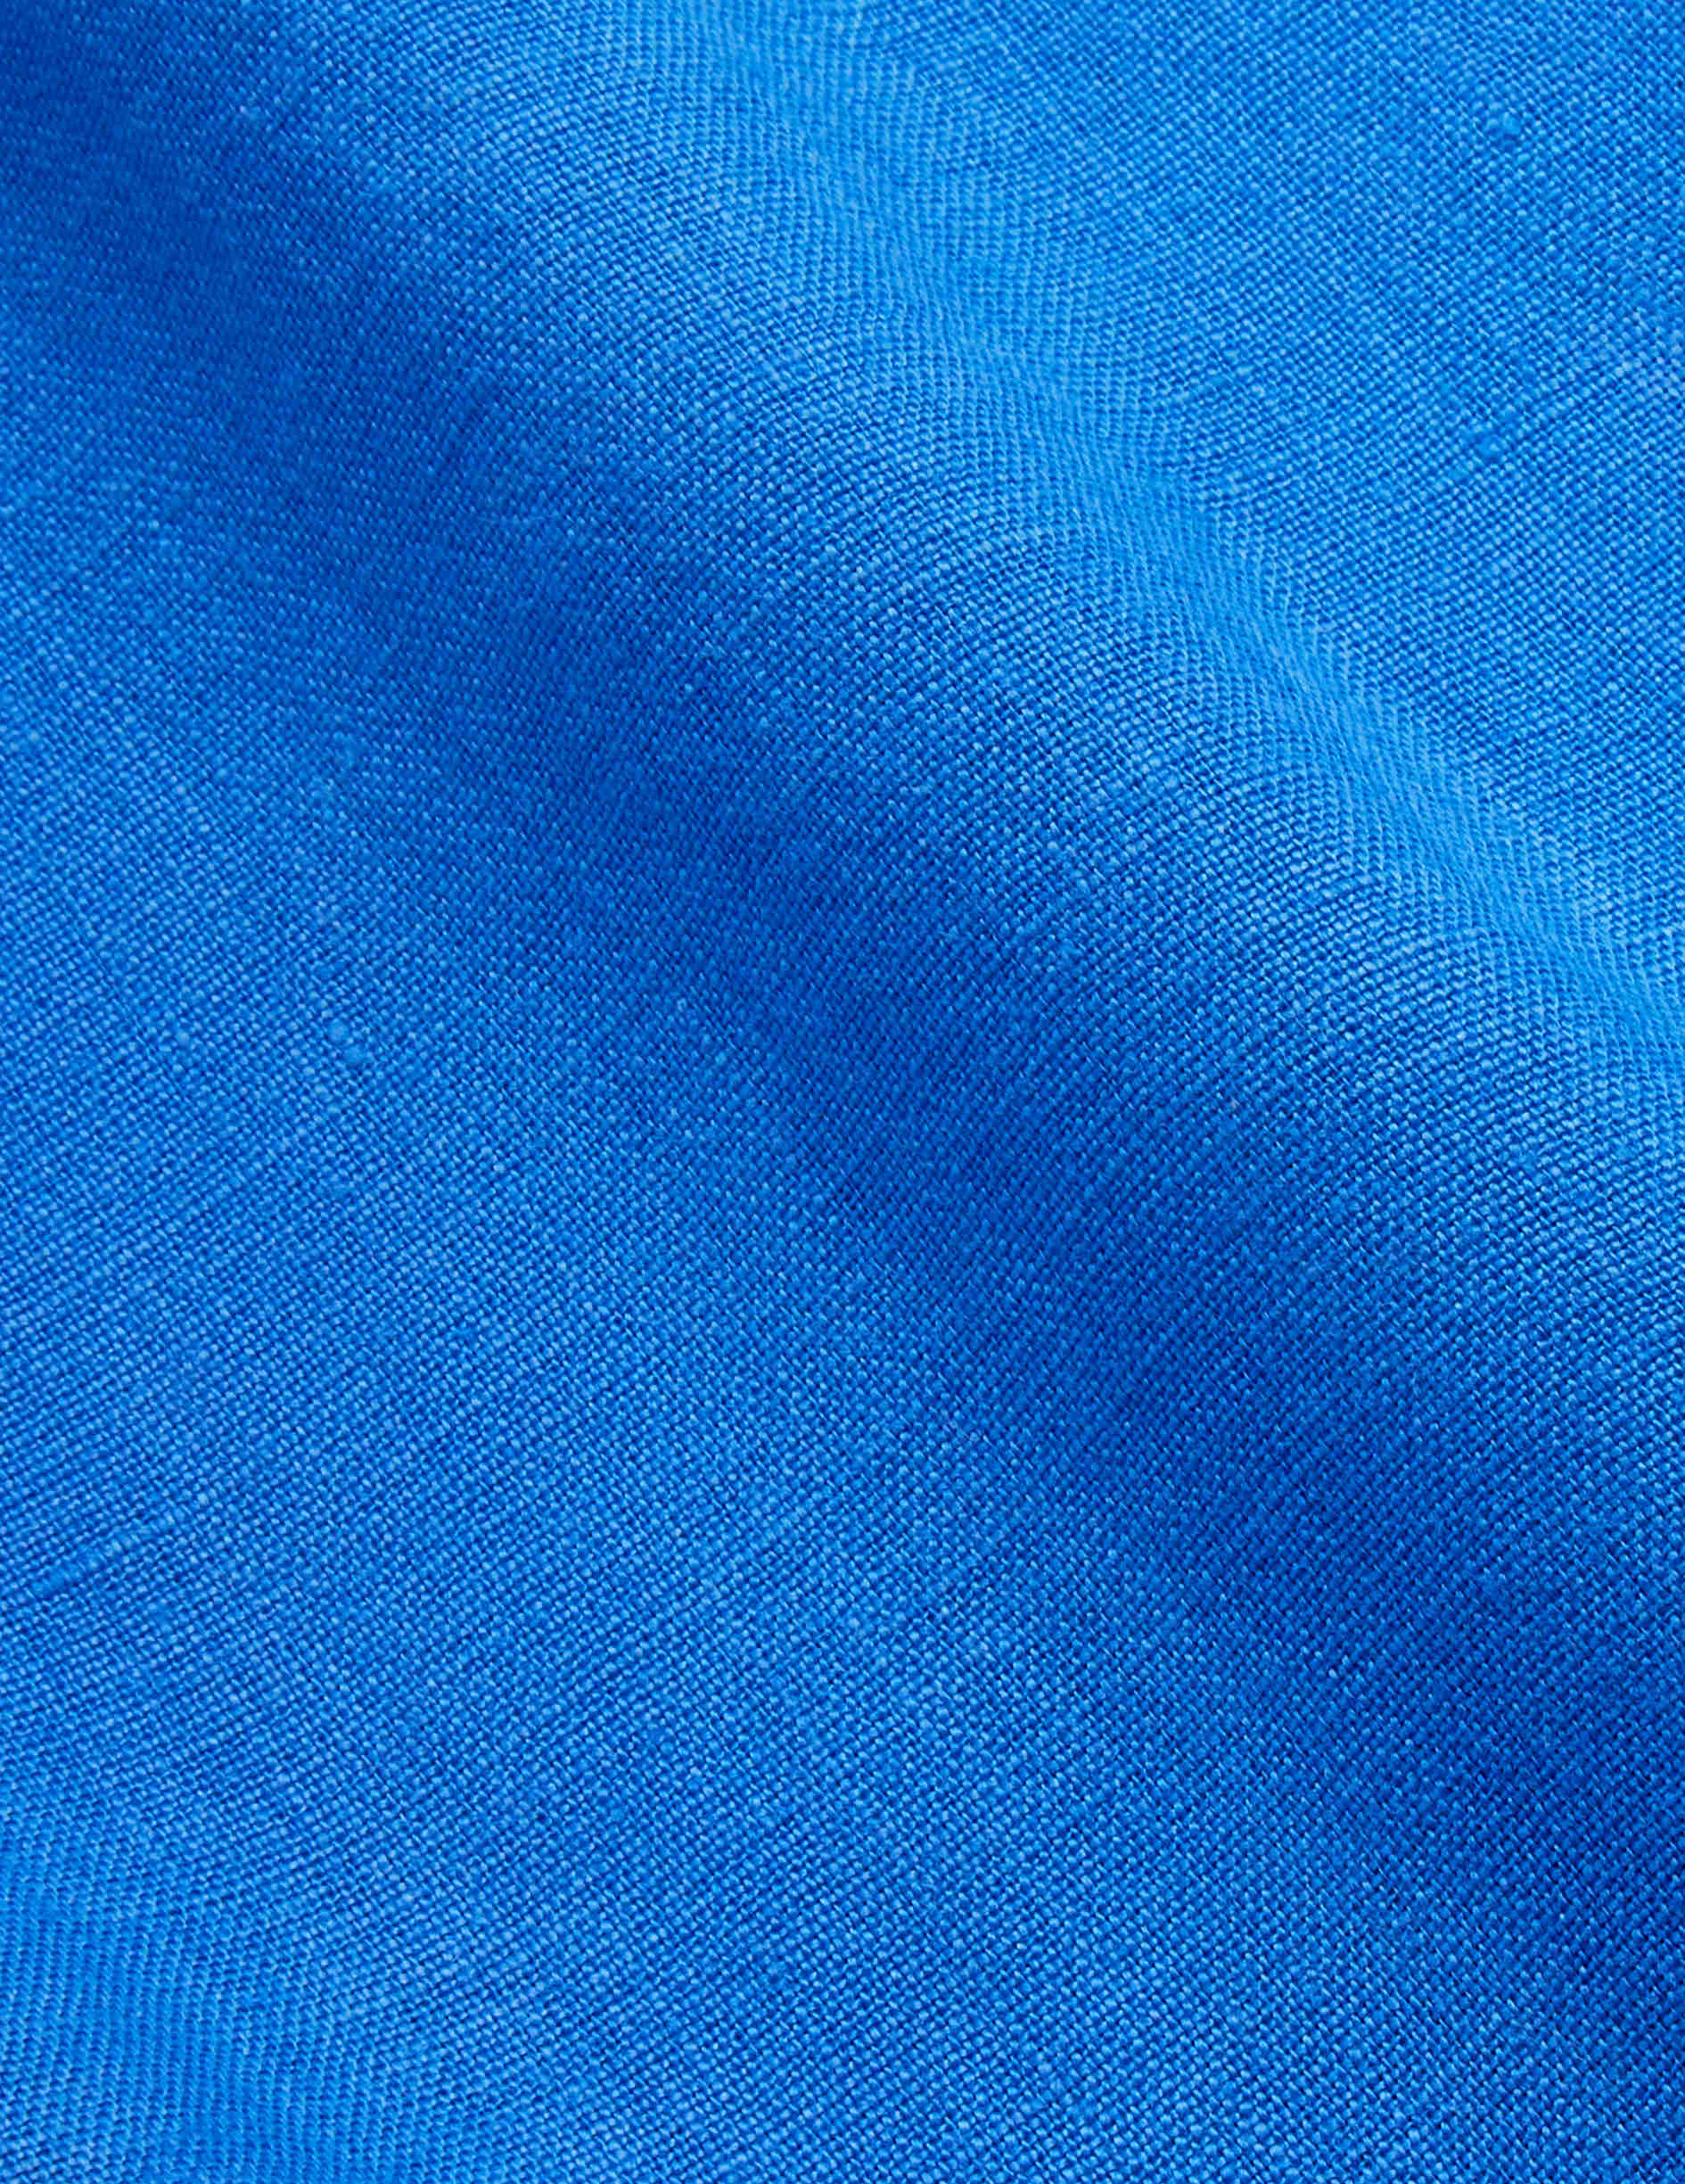 Blue linen Carl shirt - Linen - Open straight Collar